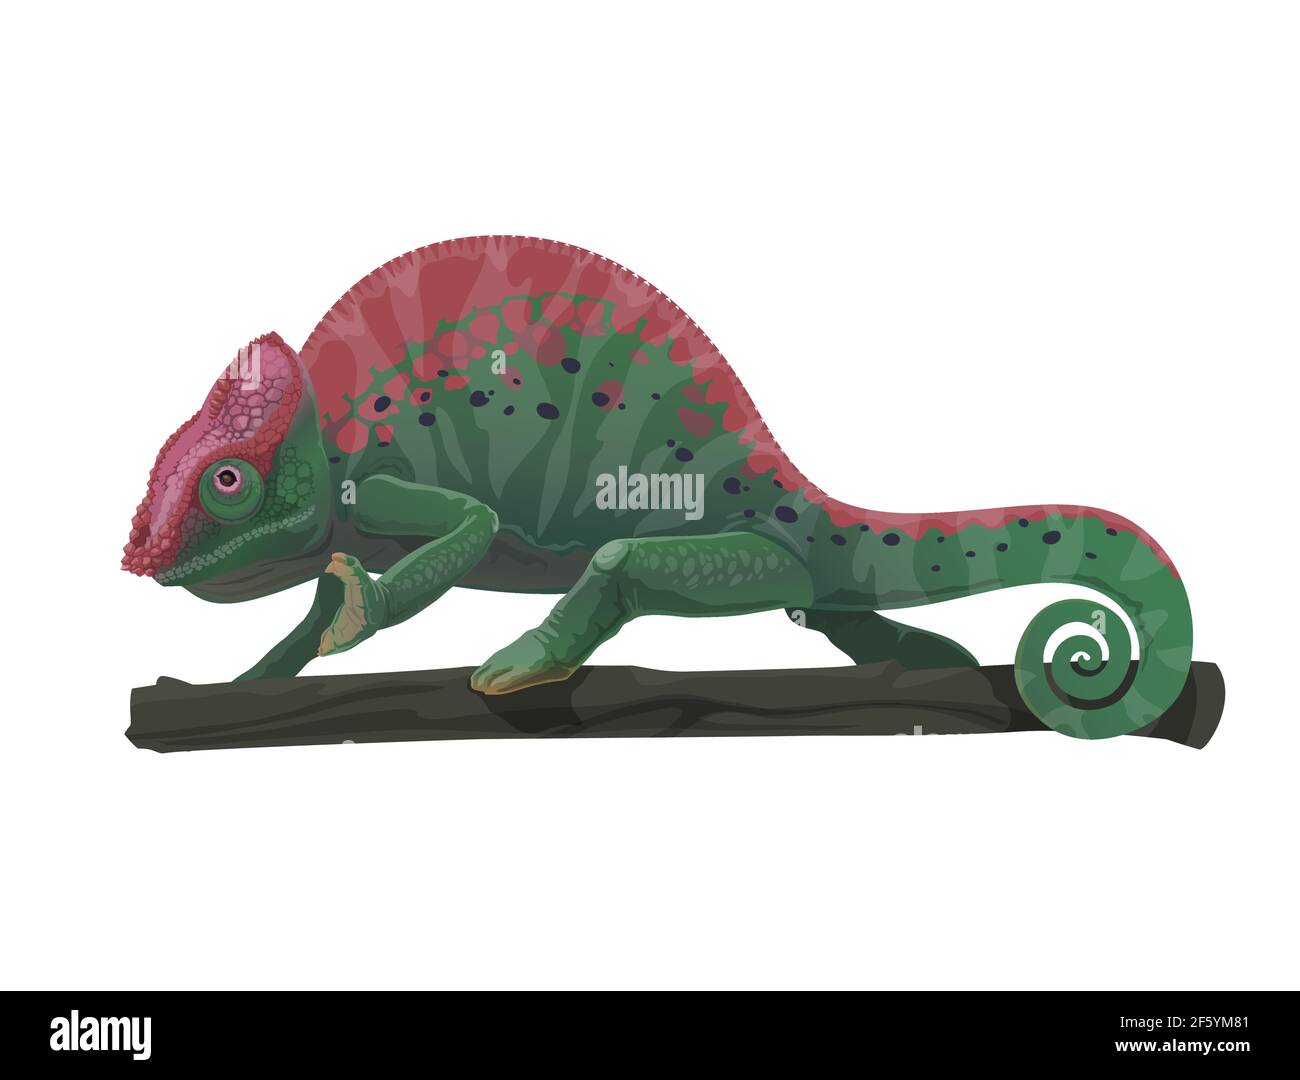 Chamäleon Eidechse Tier auf Baum Zweig Vektor-Design von Cartoon Reptil mit grünen Tarnung Hautmuster, schwarze und violette Flecken, gebogenen Schwanz, Beine. Stock Vektor